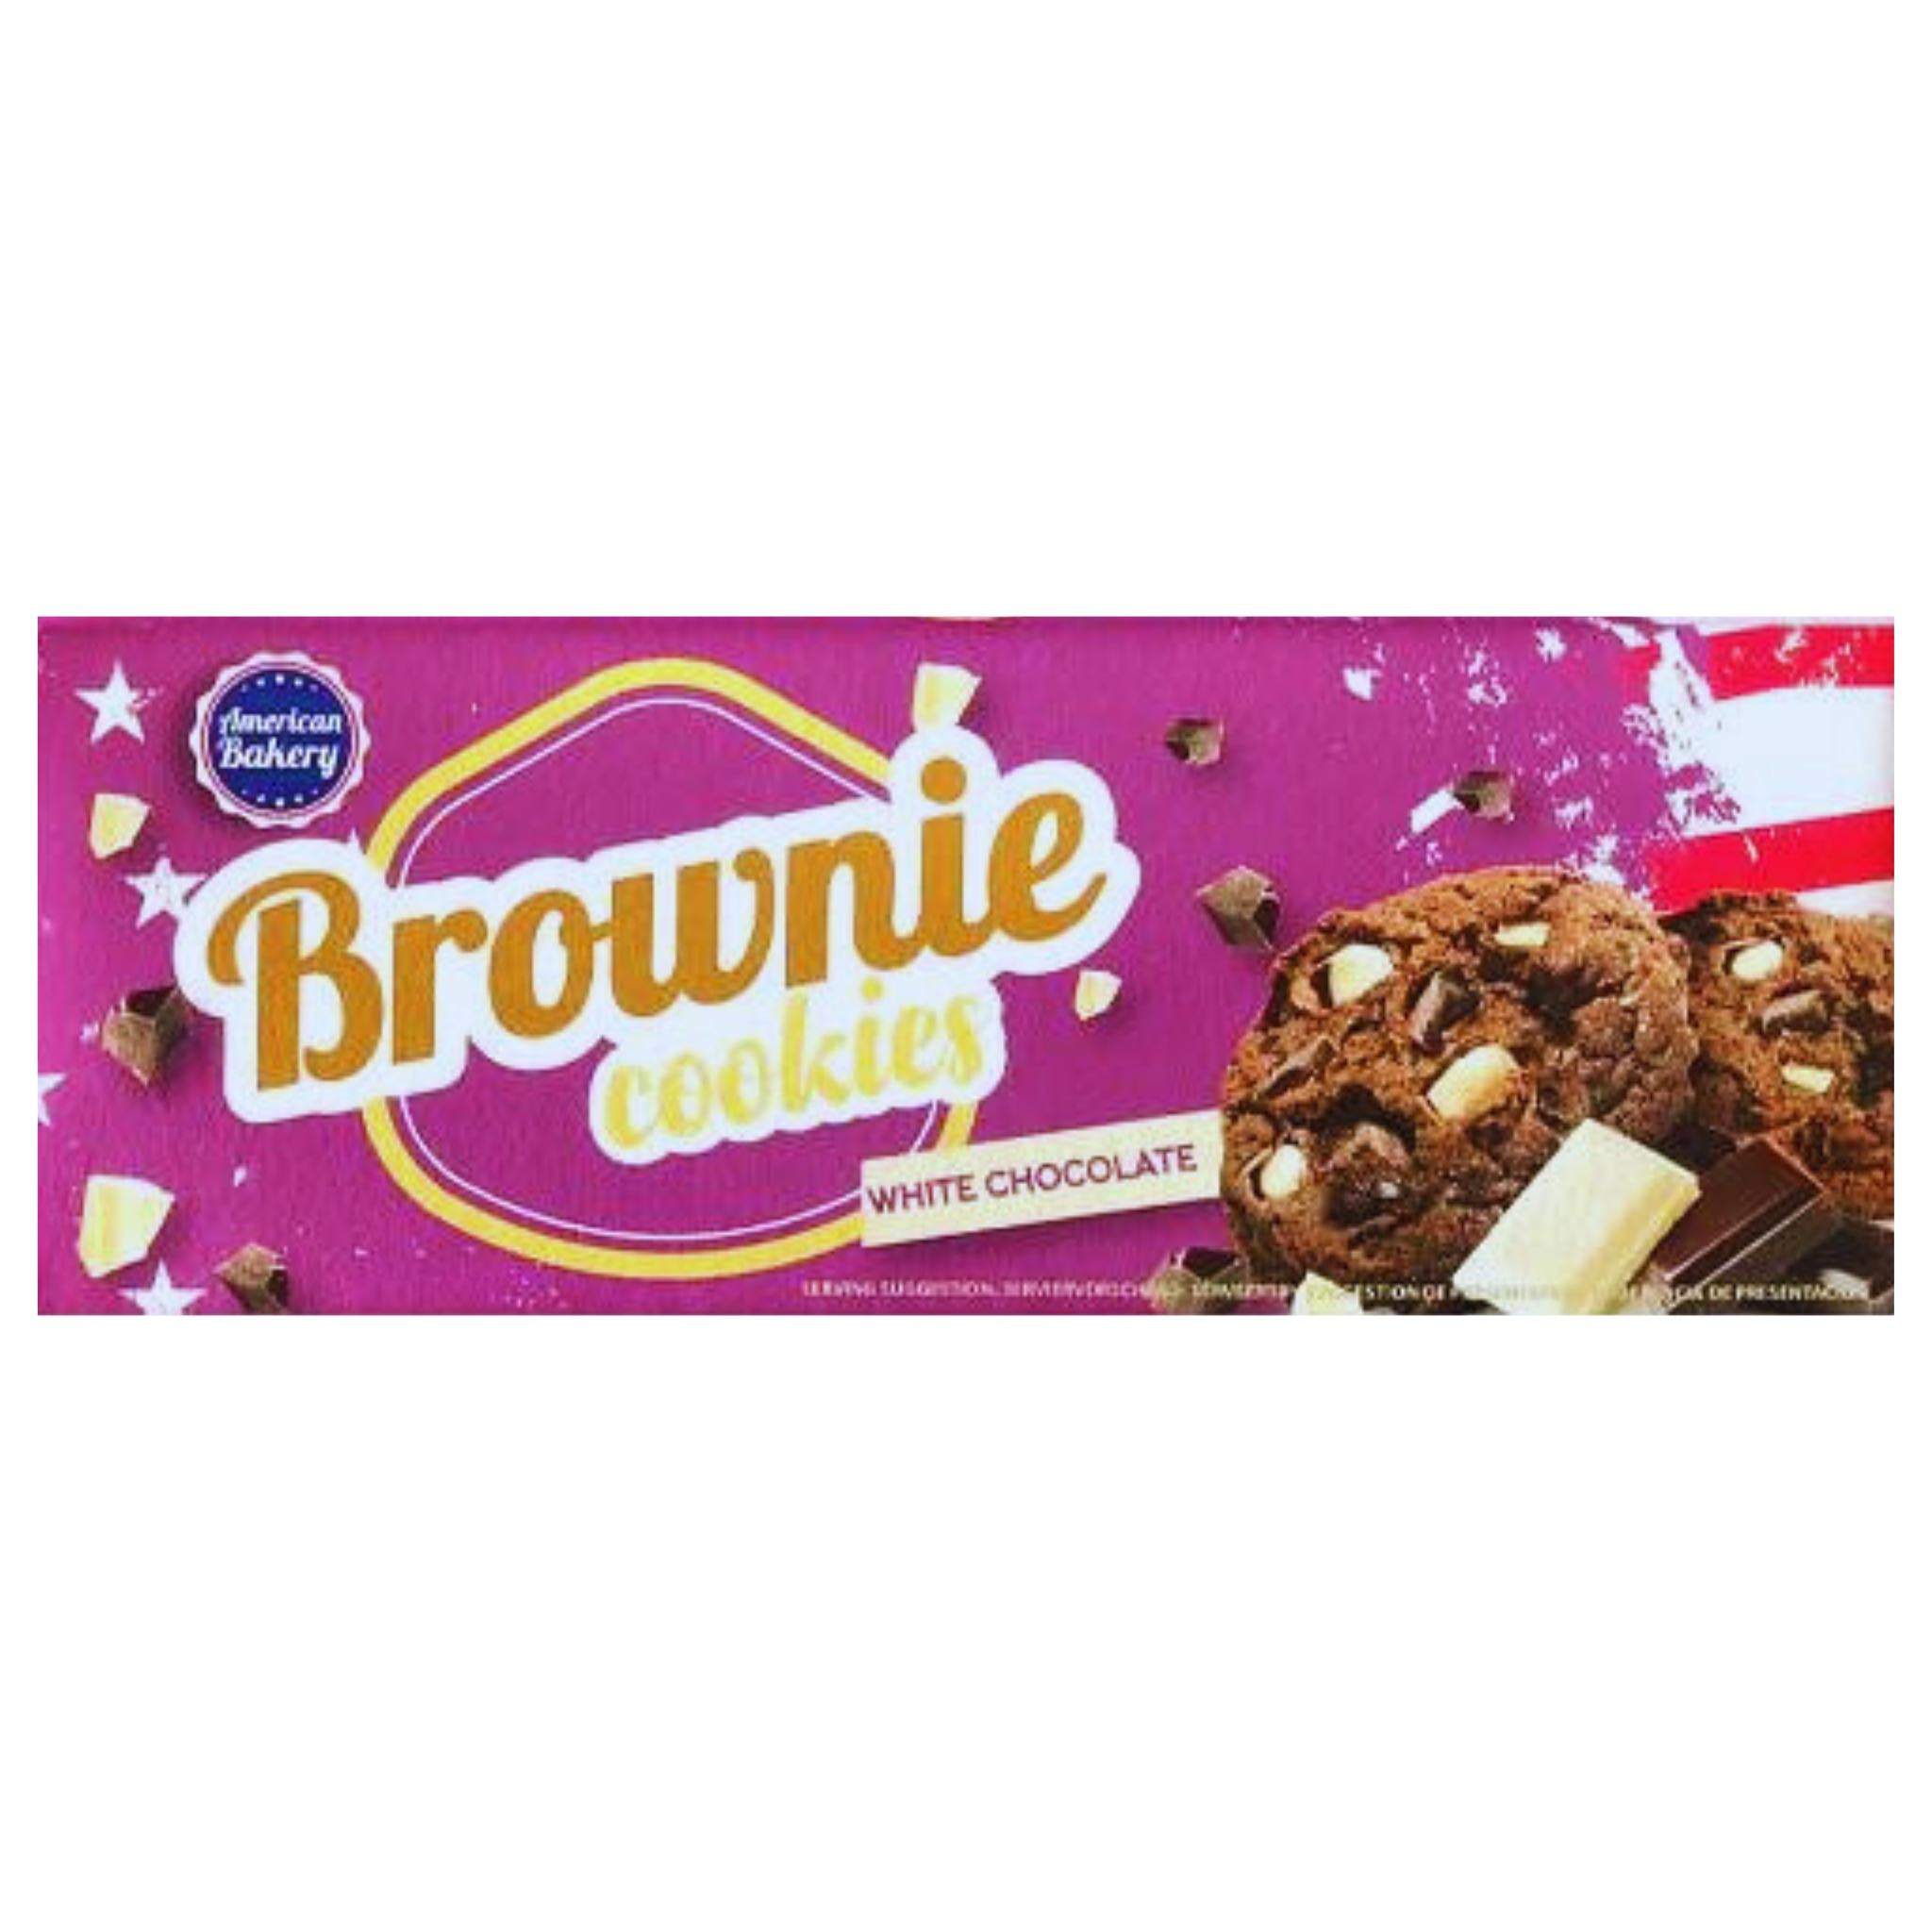 American Bakery Brownie Cookies White Chocolate - 106g